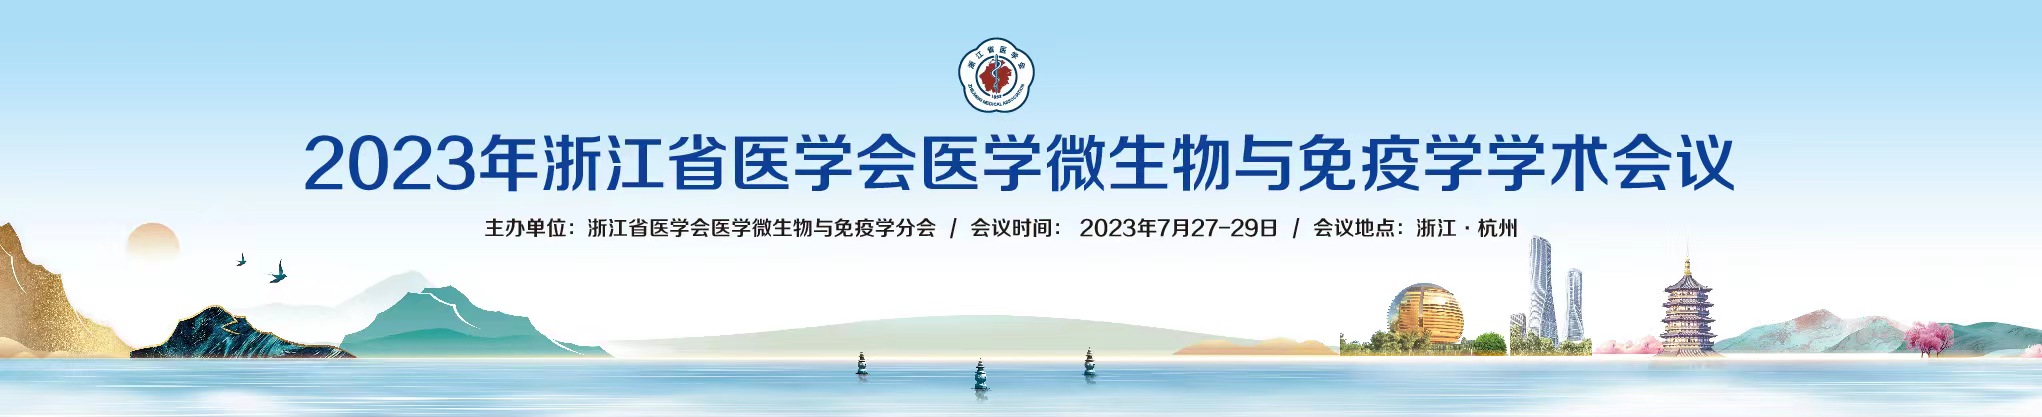 2023年浙江省医学会医学微生物与免疫学学术会议